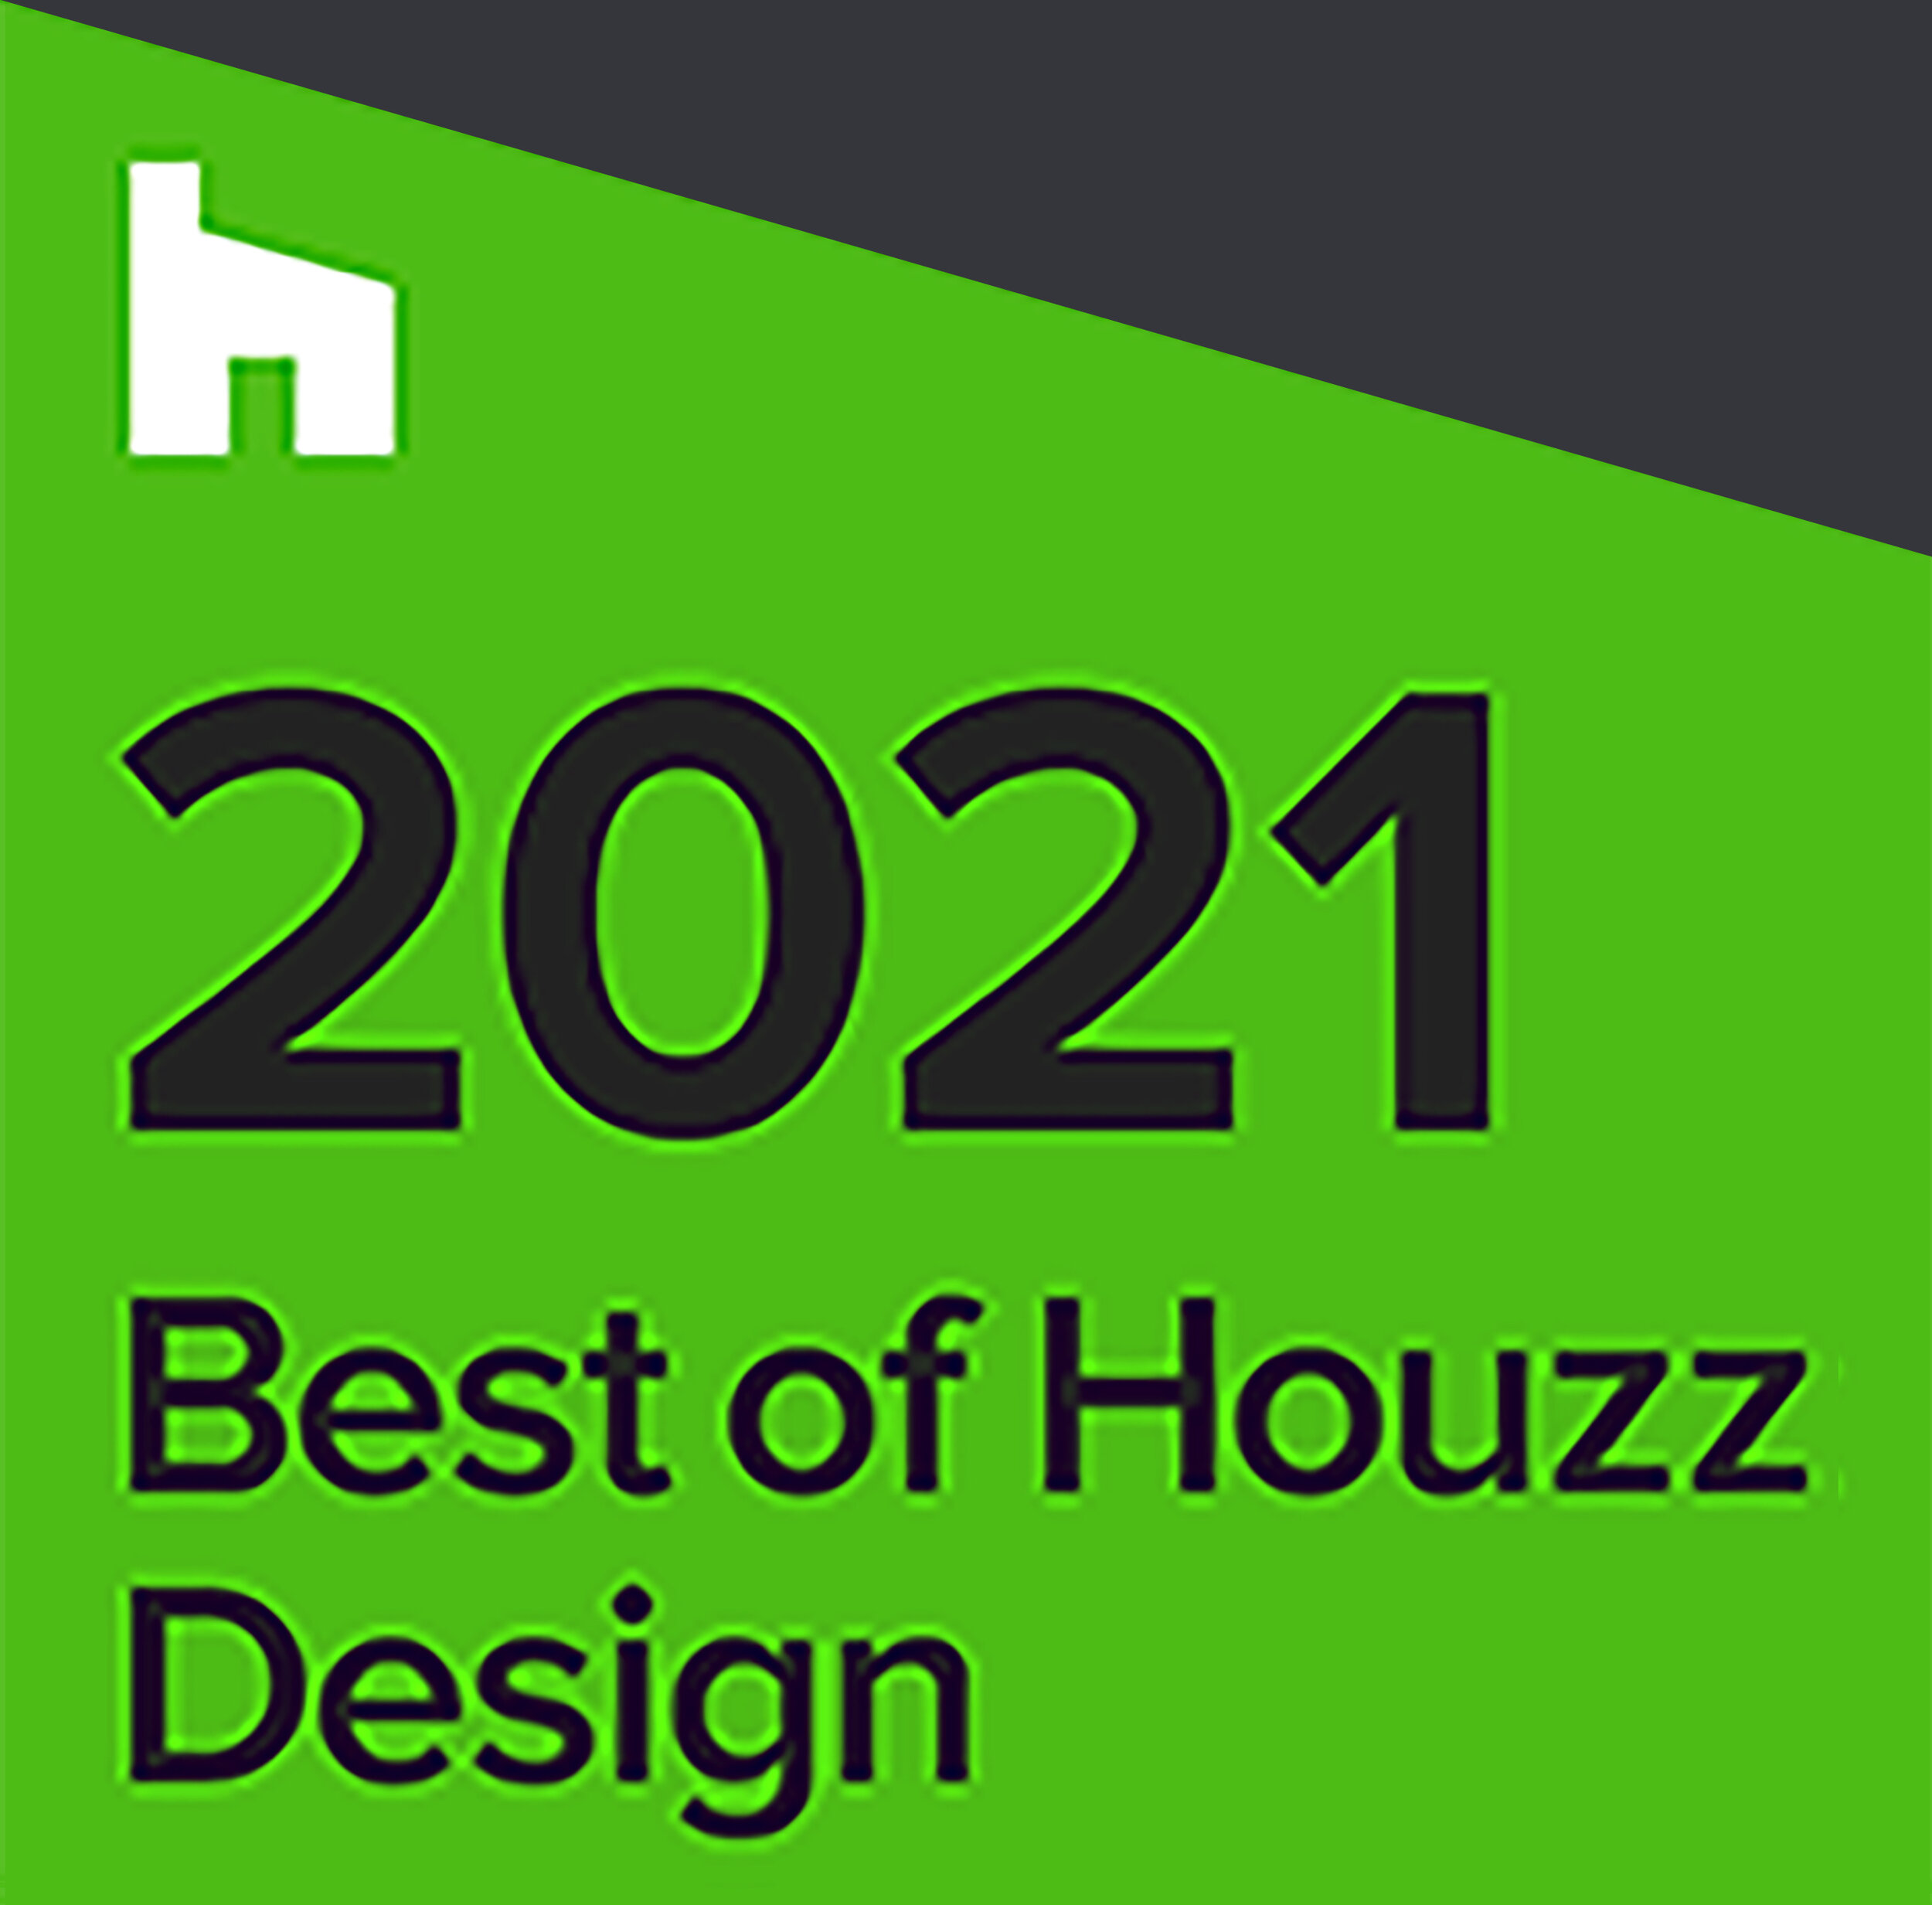 Best of Houzz 2021 Design